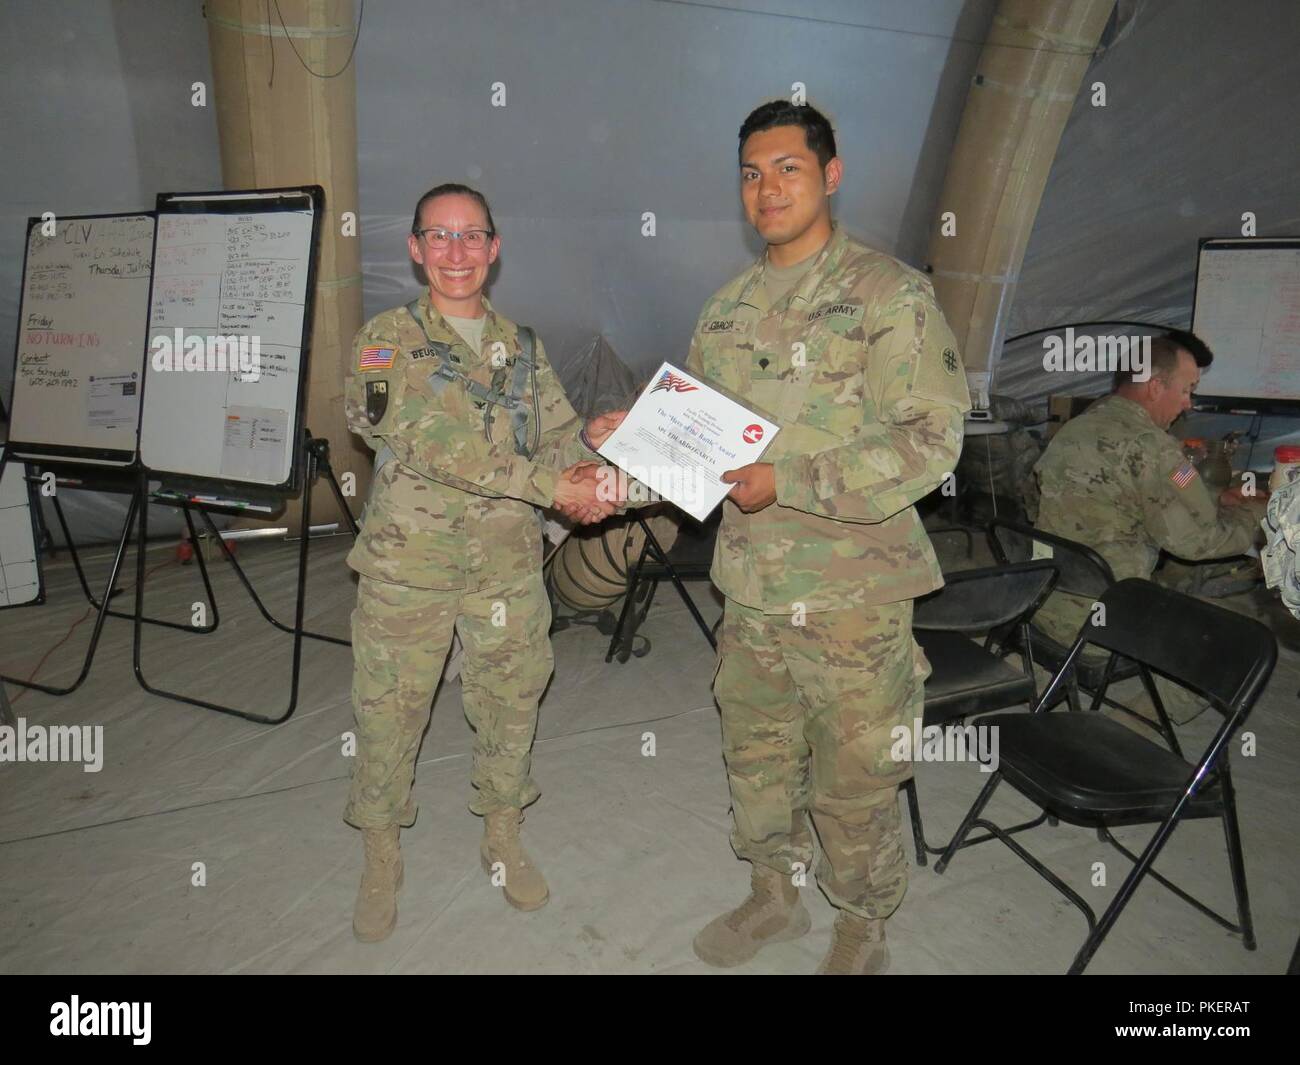 Uns Armee-reservesoldat Col. Amy Beuschlein der 2. Brigade, 84th Abteilung Weiterbildung, stellt SPC. Eduardo Garcia, ein Spezialist mit der 211 Region Support Group (RSG) auf Basis von Corpus Christi, Texas, mit einem Zertifikat für ein "Held der Schlacht" am 26. Juli 2018, am Fort Hunter Liggett, Calif., während CSTX 91-18-01. Spc. Garcia war die Auszeichnung für seine herausragenden Beiträge gegeben, während das Lernen eines neuen Programms, das die 211. Mit anderen Einheiten über das Schlachtfeld zu kommunizieren. CSTX 91-18-01 sorgt für America's Army Reserve Einheiten ausgebildet werden an Br bereitstellen Stockfoto